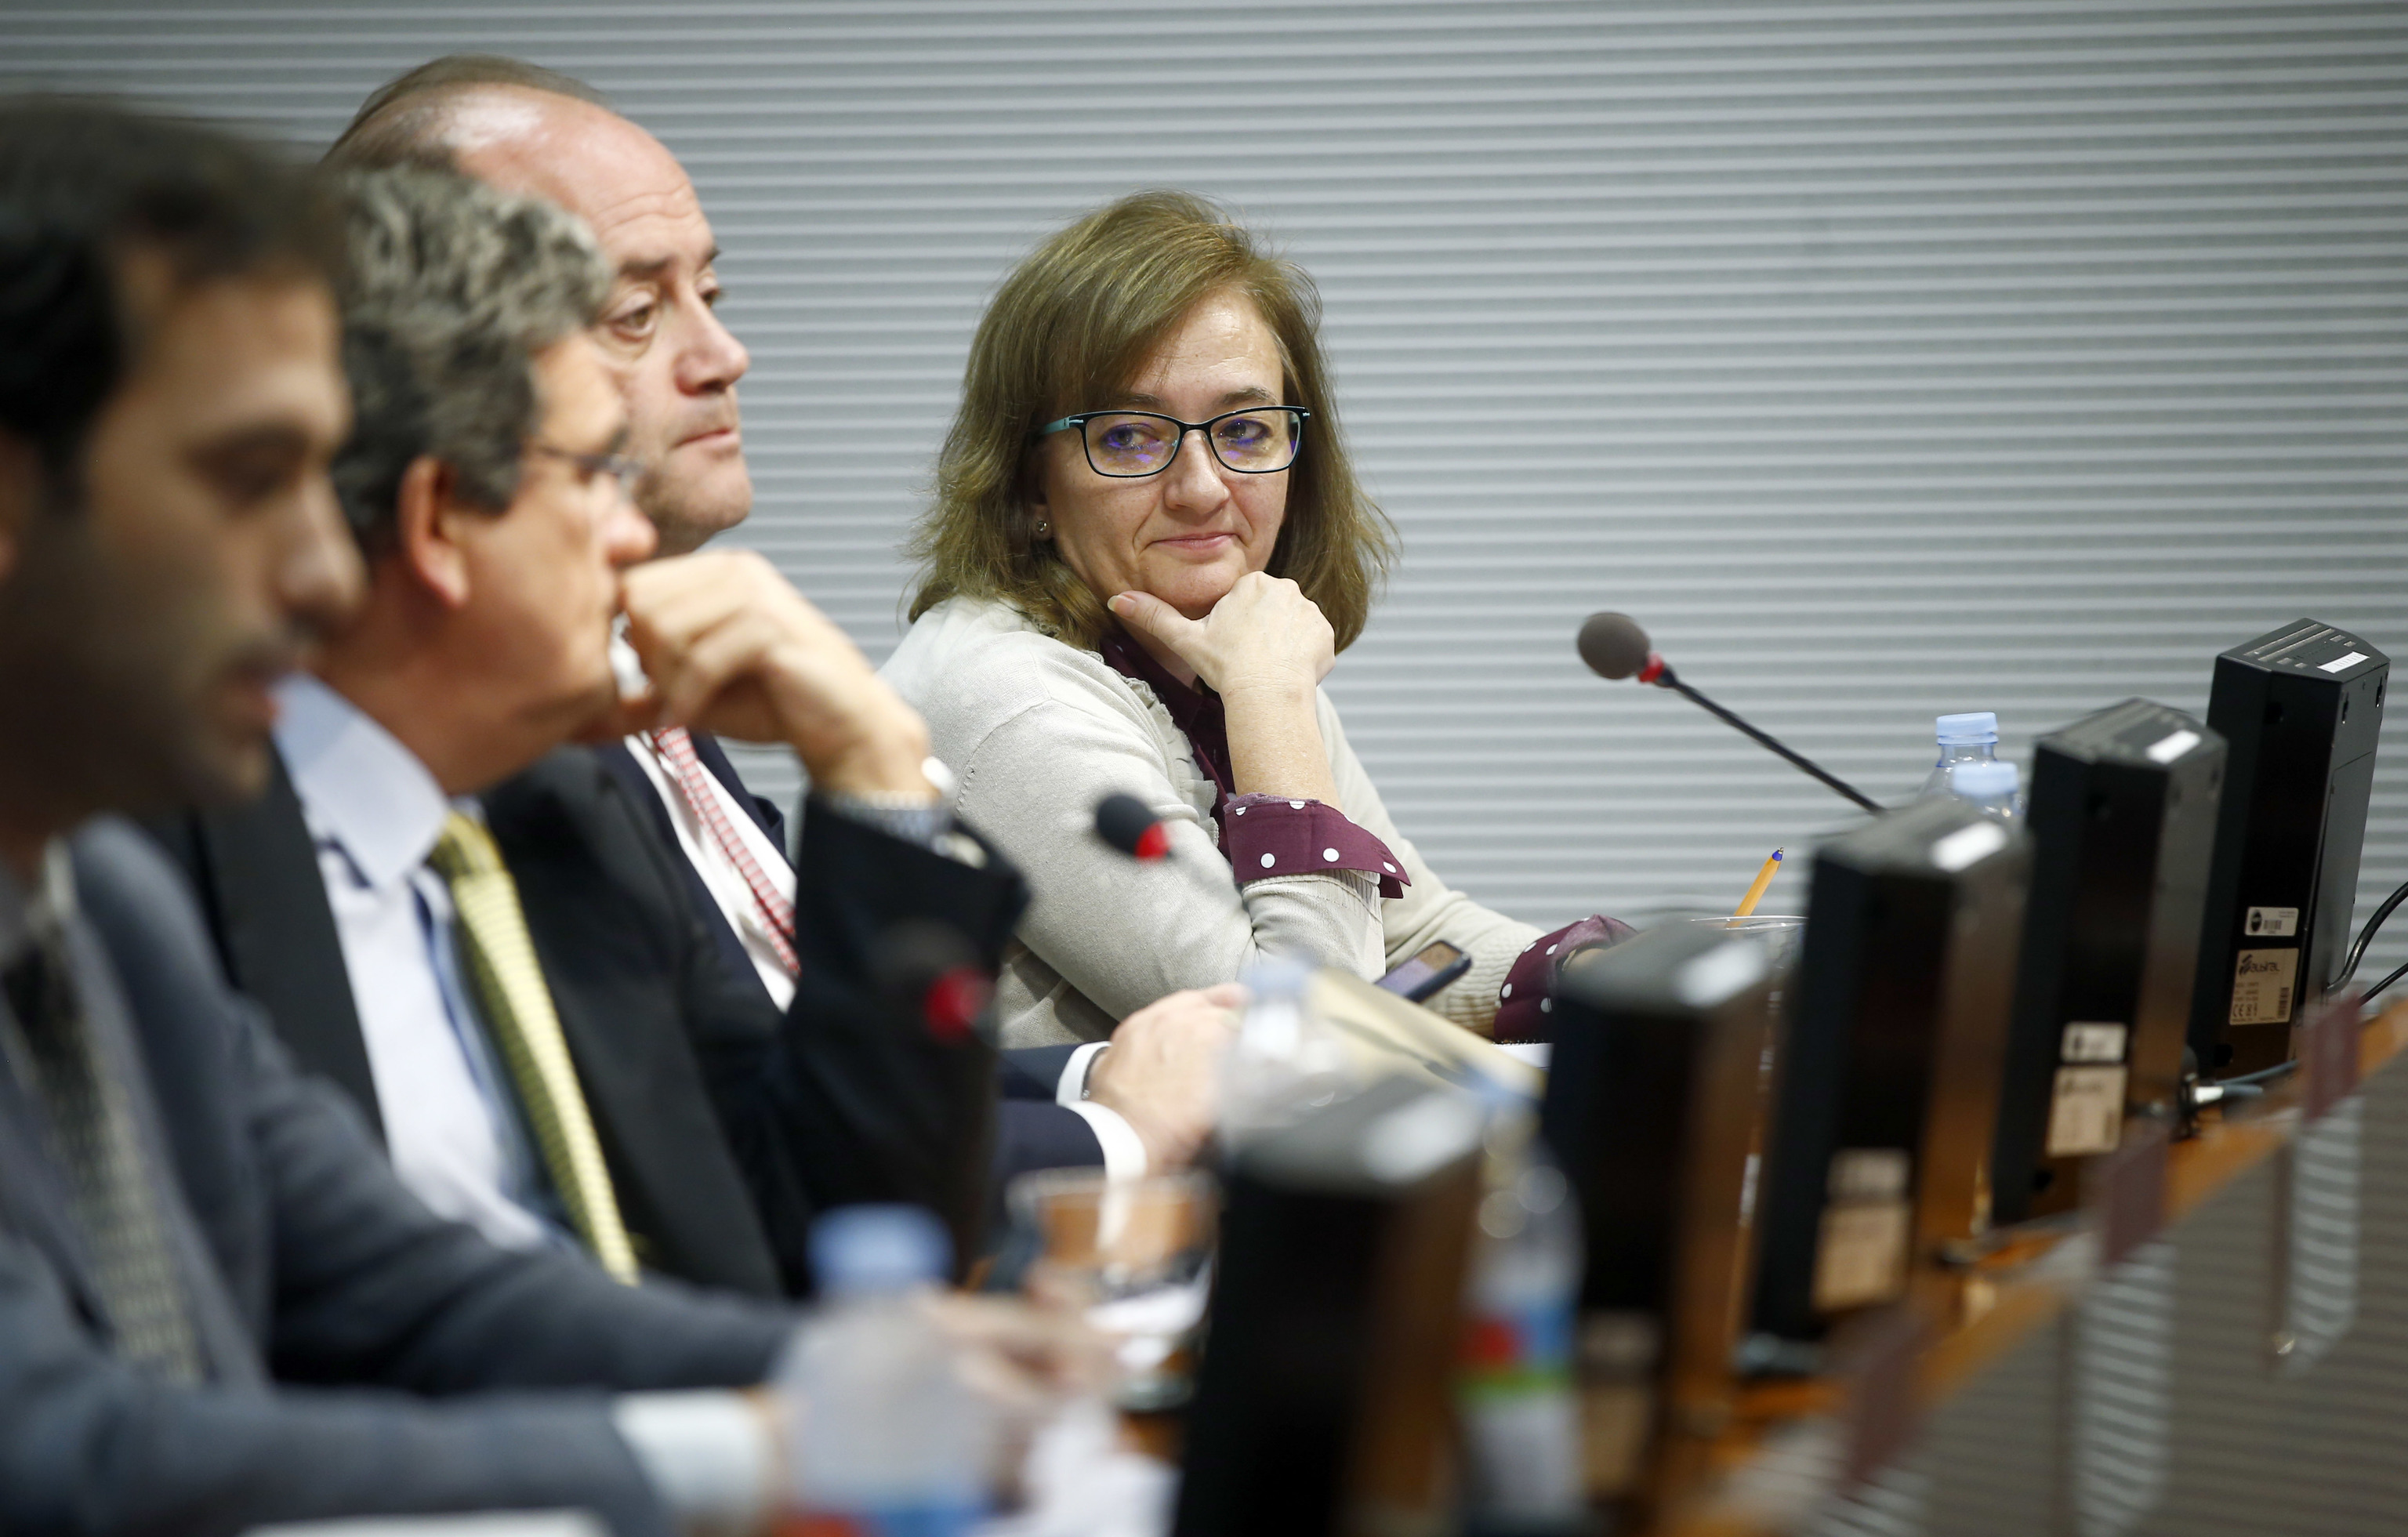 El ministro de Seguridad Social y ex presidente de la AIReF, José Luis Escrivá (centro de la imagen), en una rueda de prensa junto a la actual presidenta de la AIReF, Cristina Herrero.